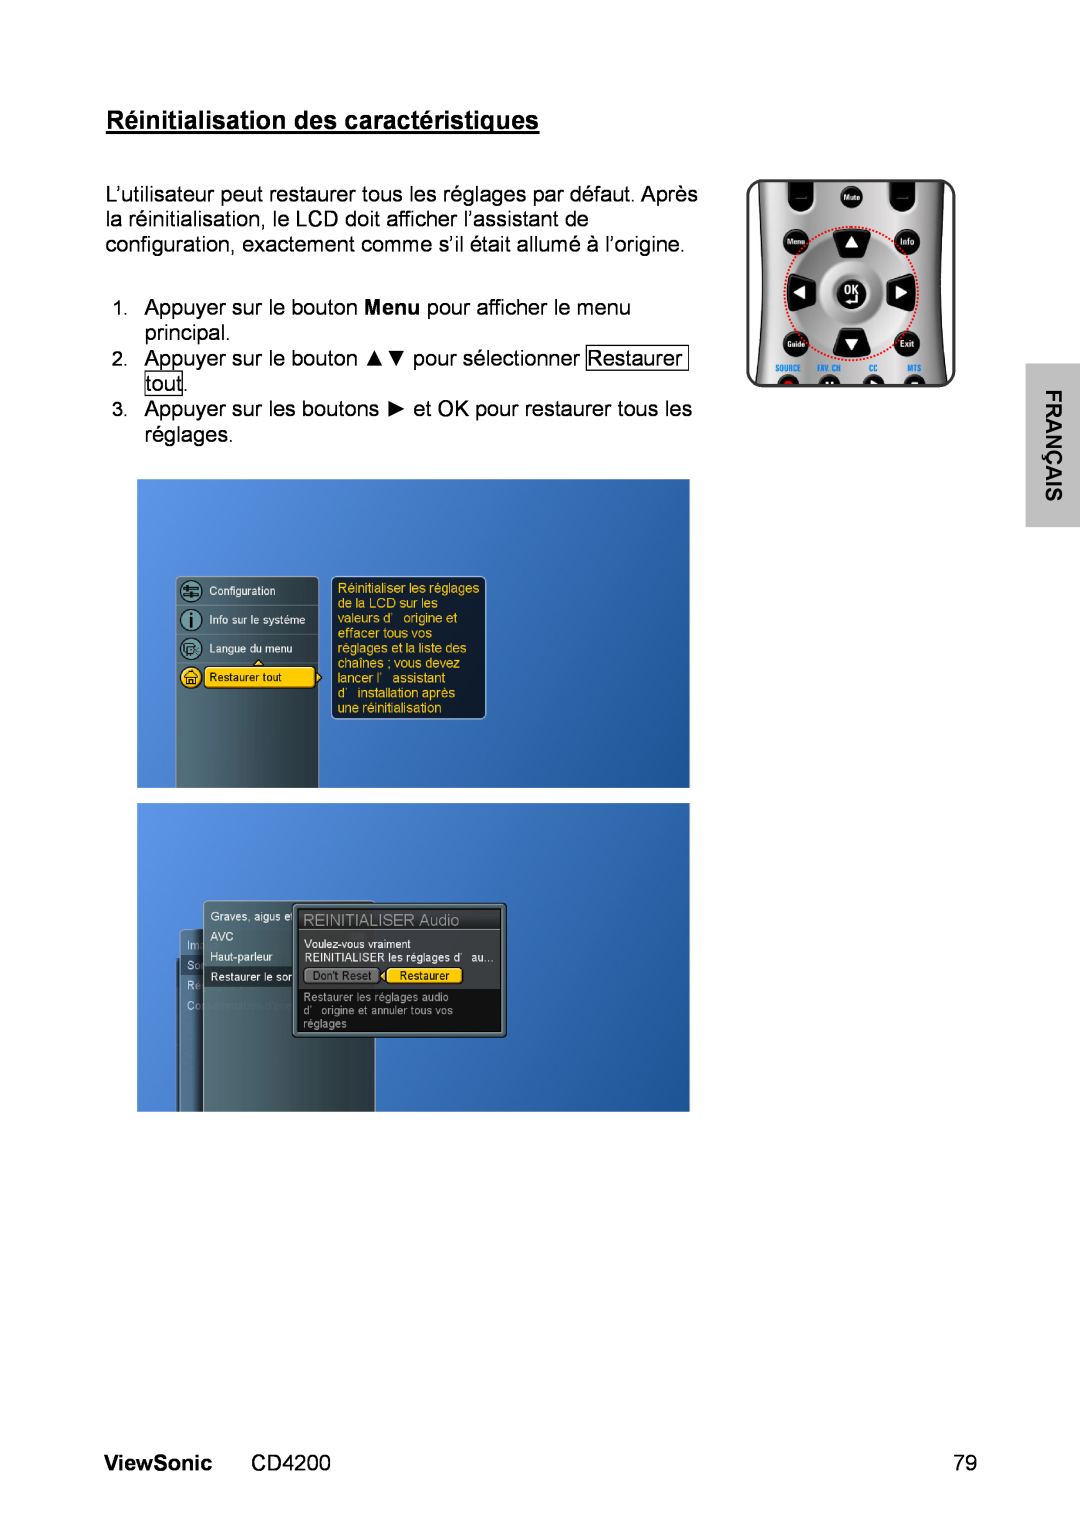 ViewSonic manual Réinitialisation des caractéristiques, Français, ViewSonic CD4200 